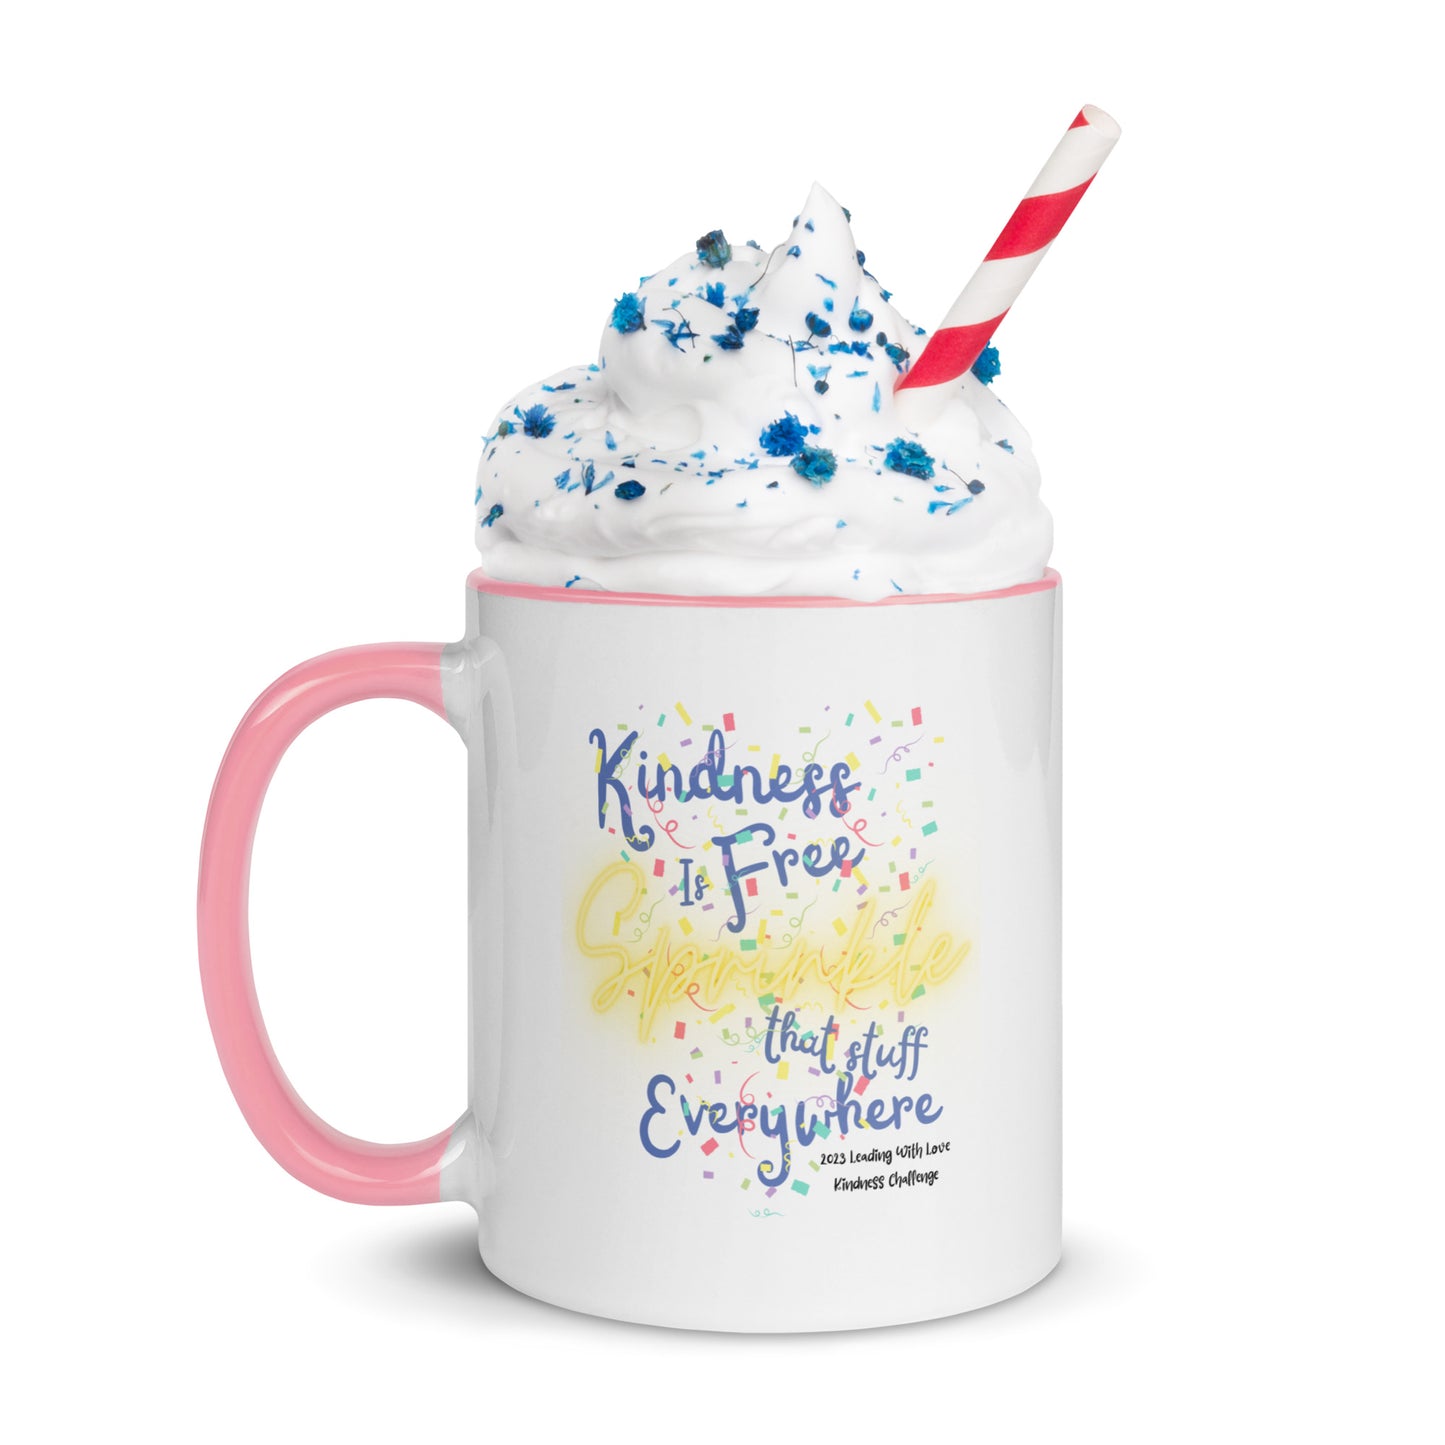 Sprinkle of Kindness Mug with Color Inside